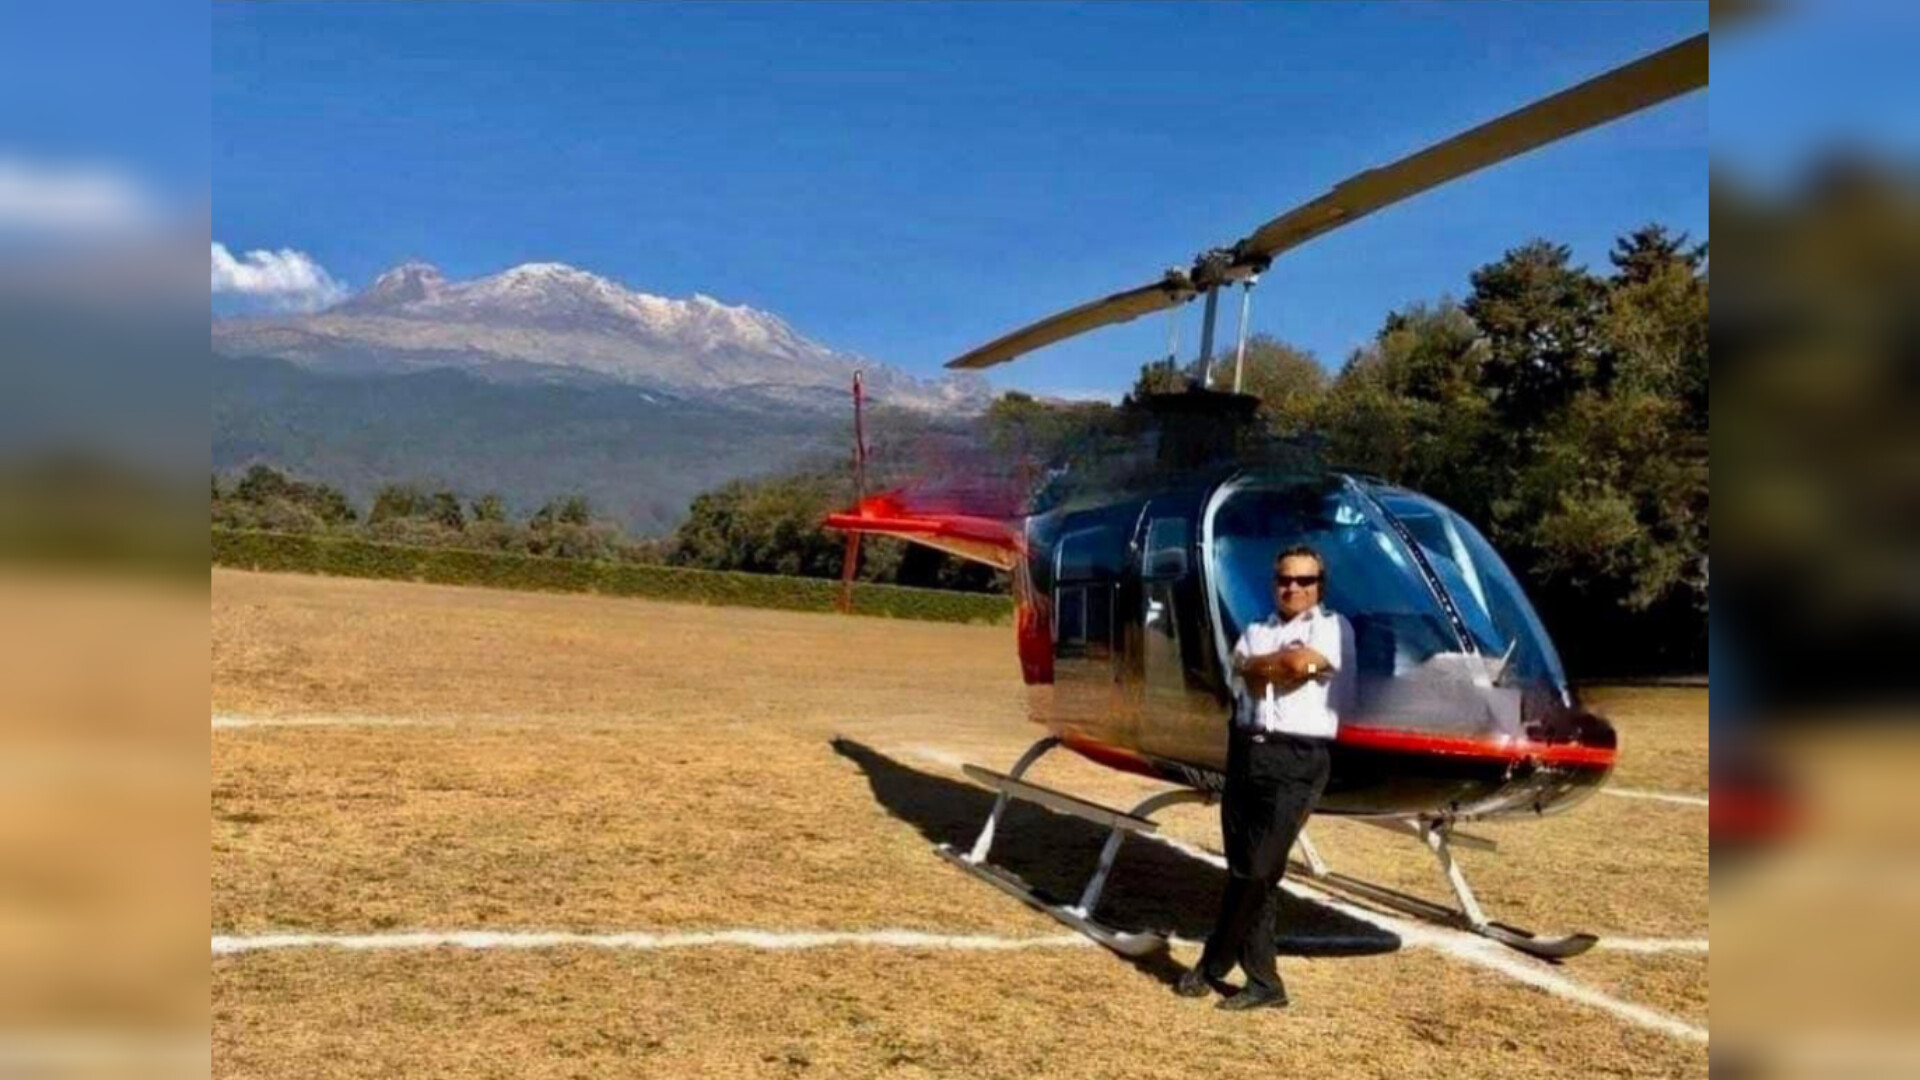 fotografía del helicóptero y su piloto, días antes, en un paraje aparentemente campestre. Créditos: especial